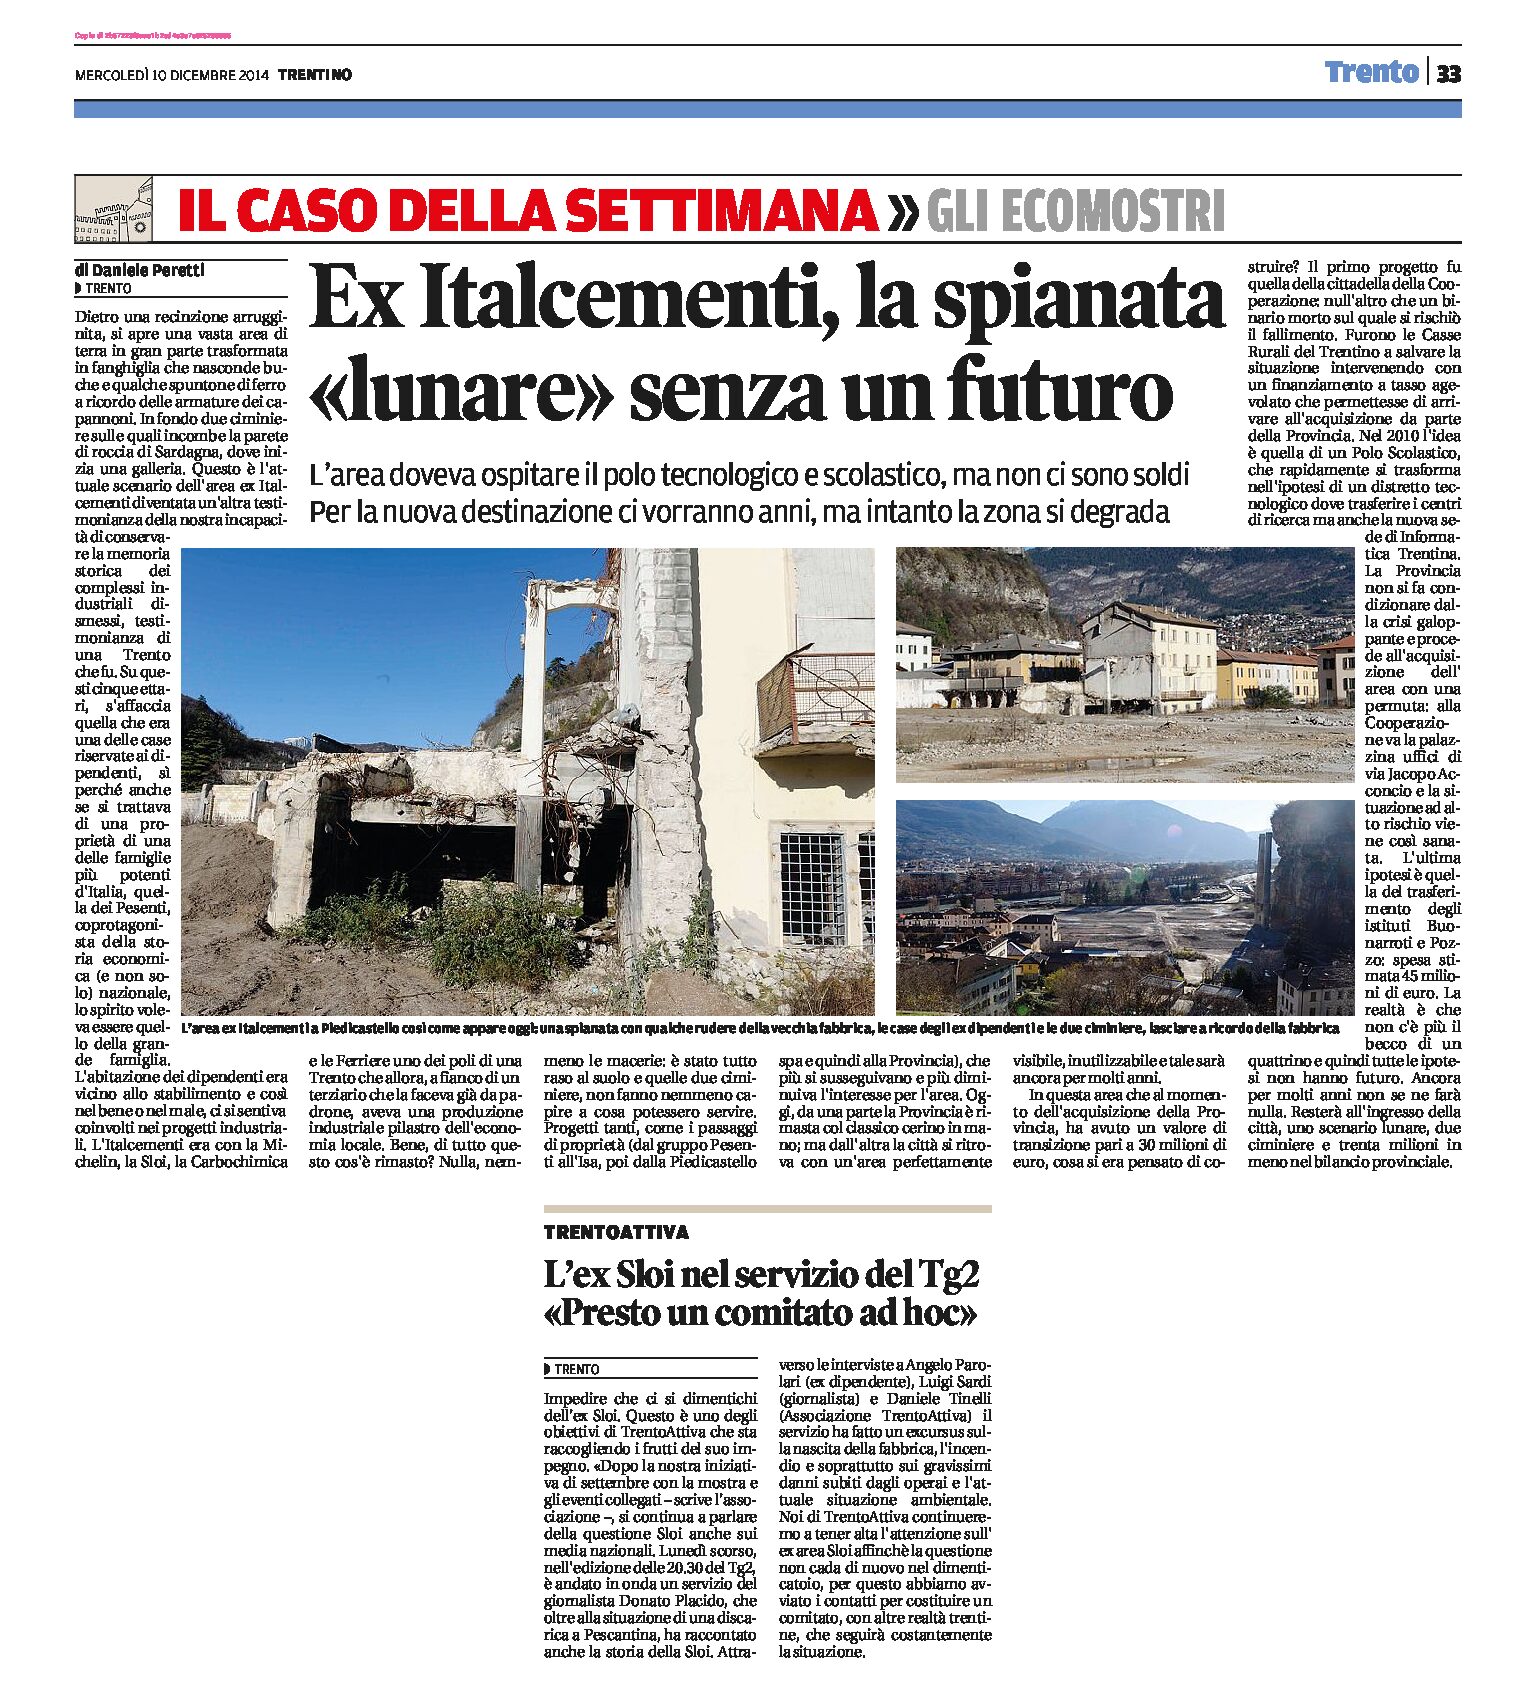 Trento: Ex Italcementi, la spianata lunare senza un futuro.